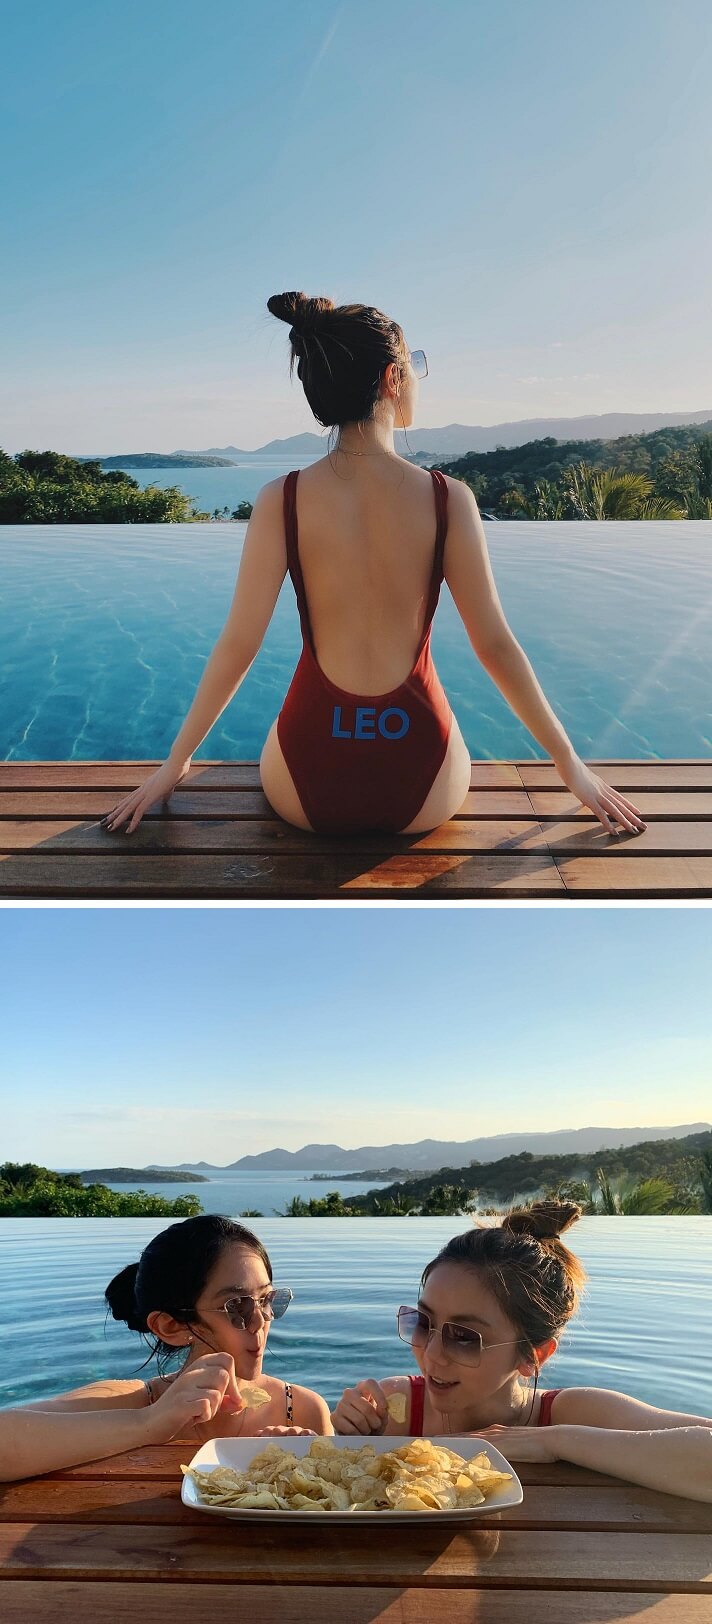 G.E.M與妹妹在泳池邊留影，背景似在熱帶地方，與傳聞舉辦婚禮的泰國有吻感之處，難道惹人聯想。